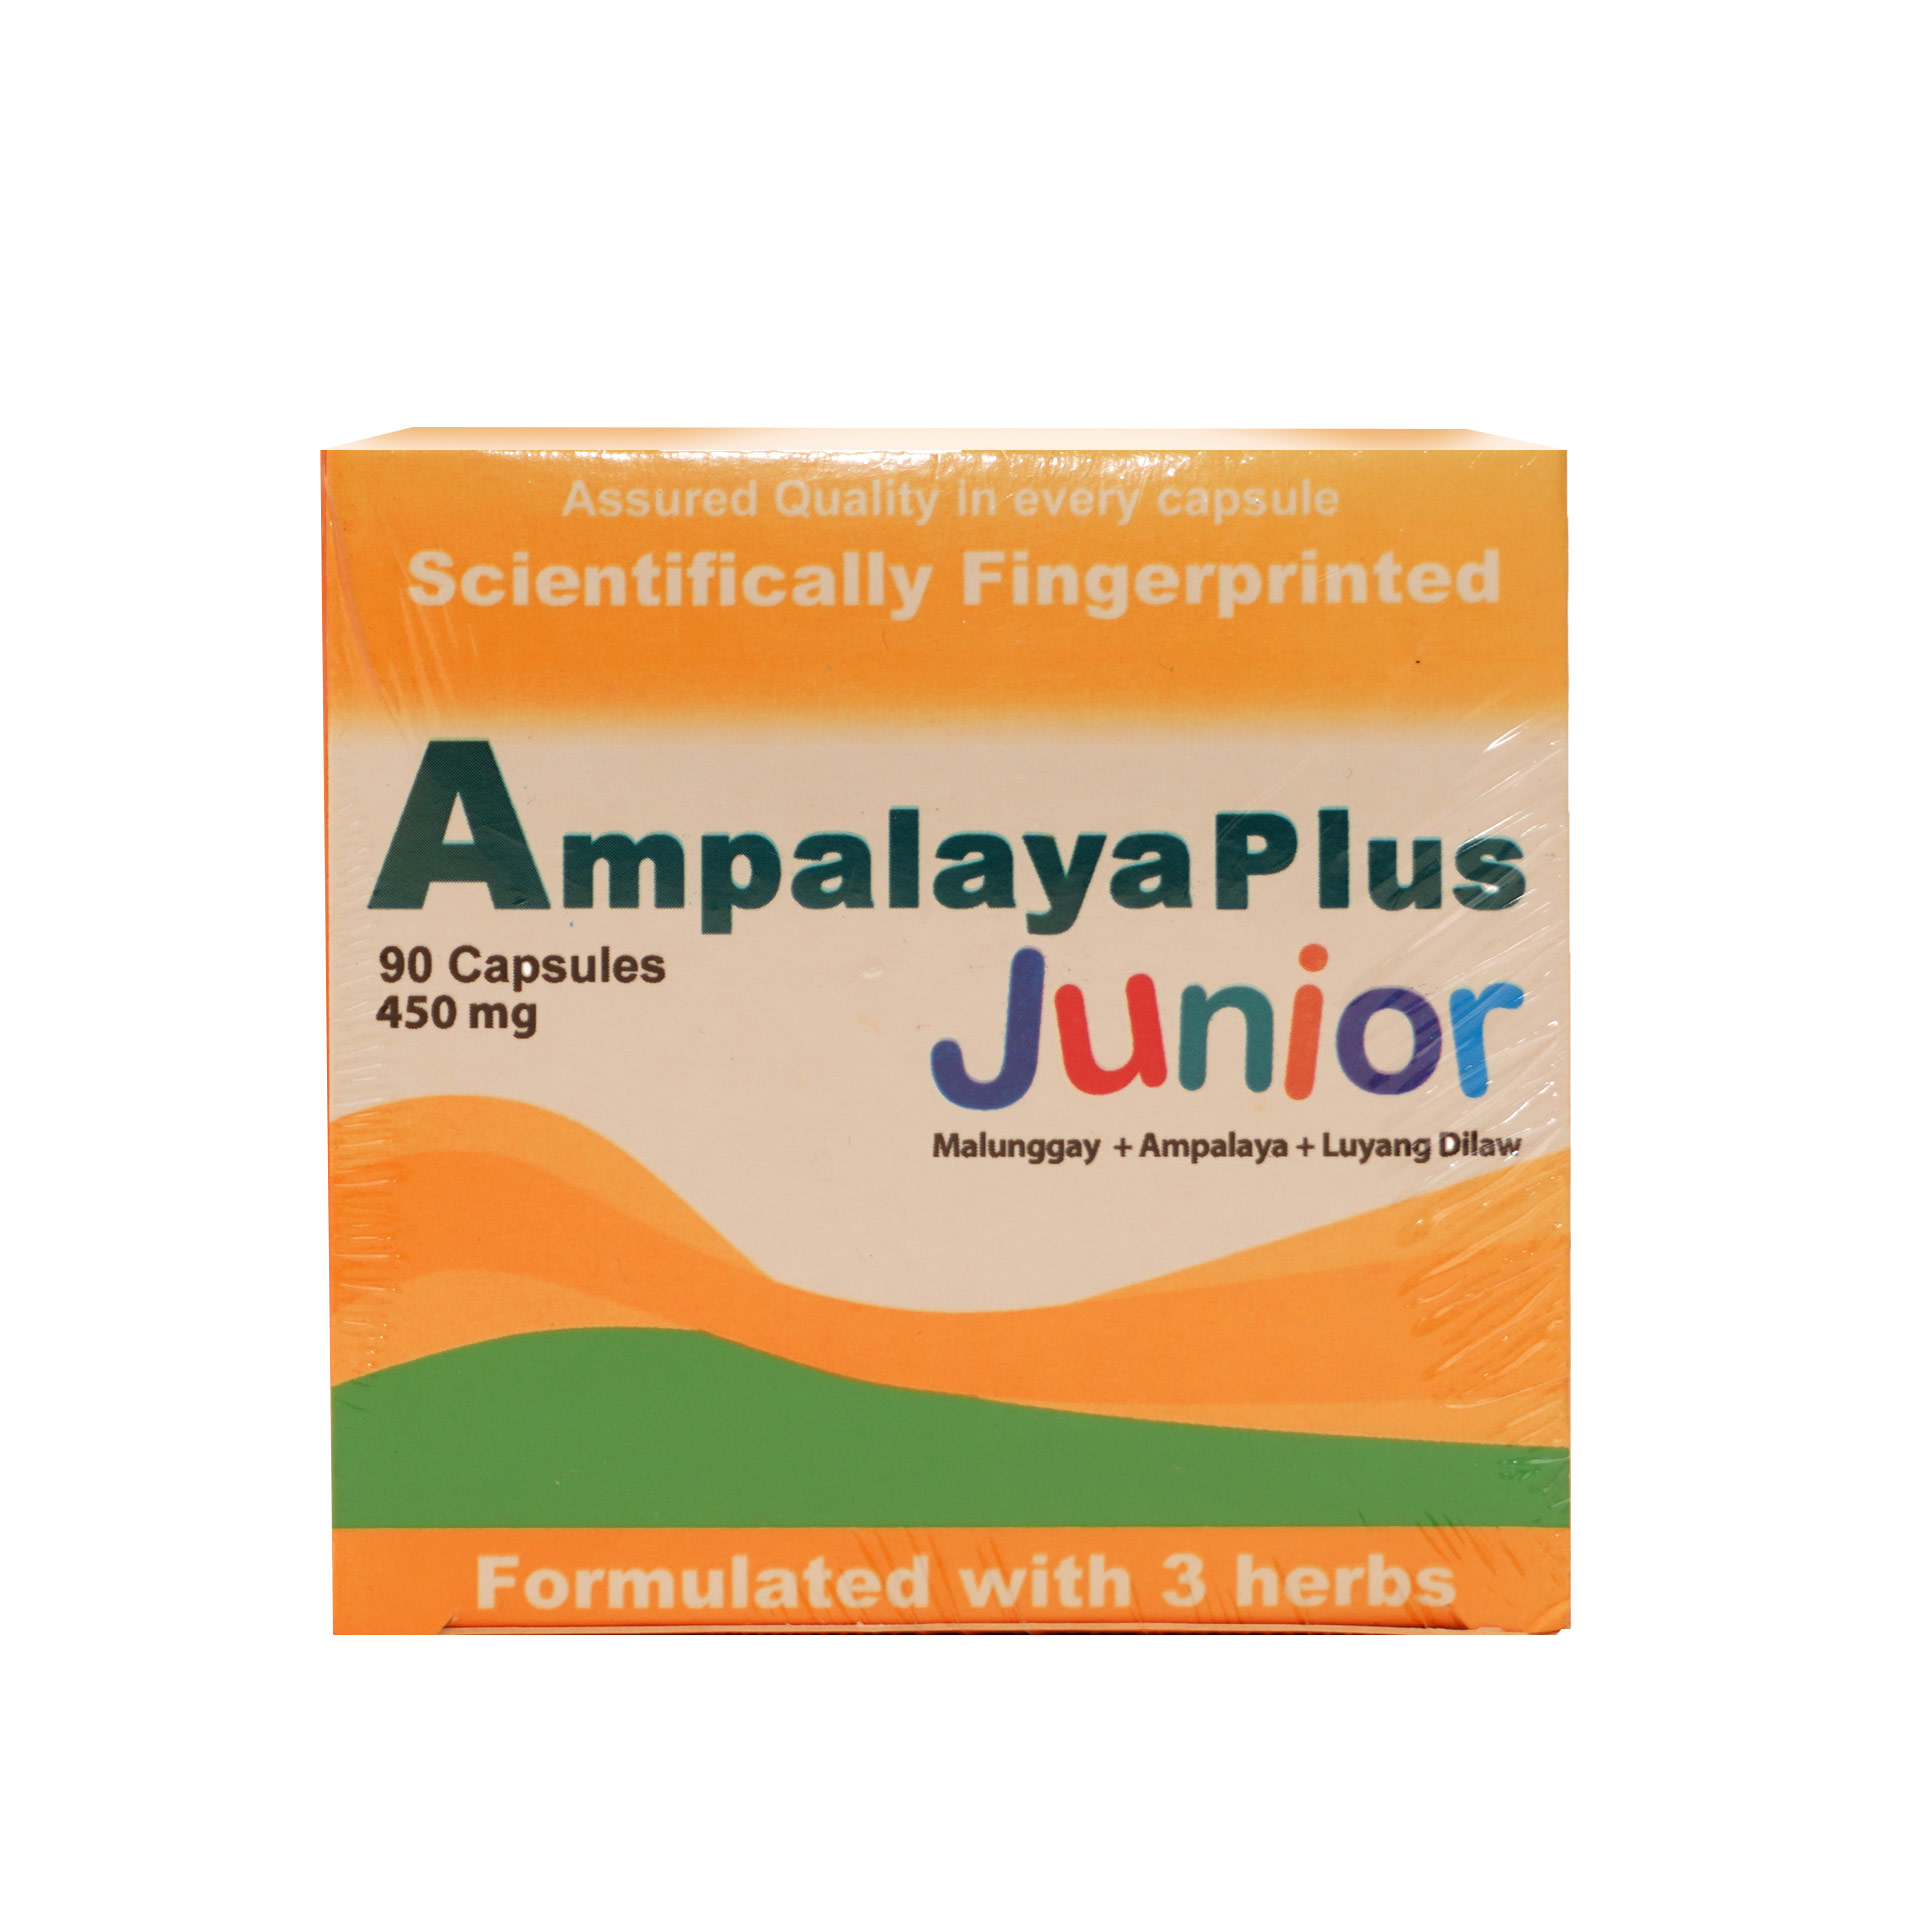 Ampalaya Plus Junior (90 capsules)